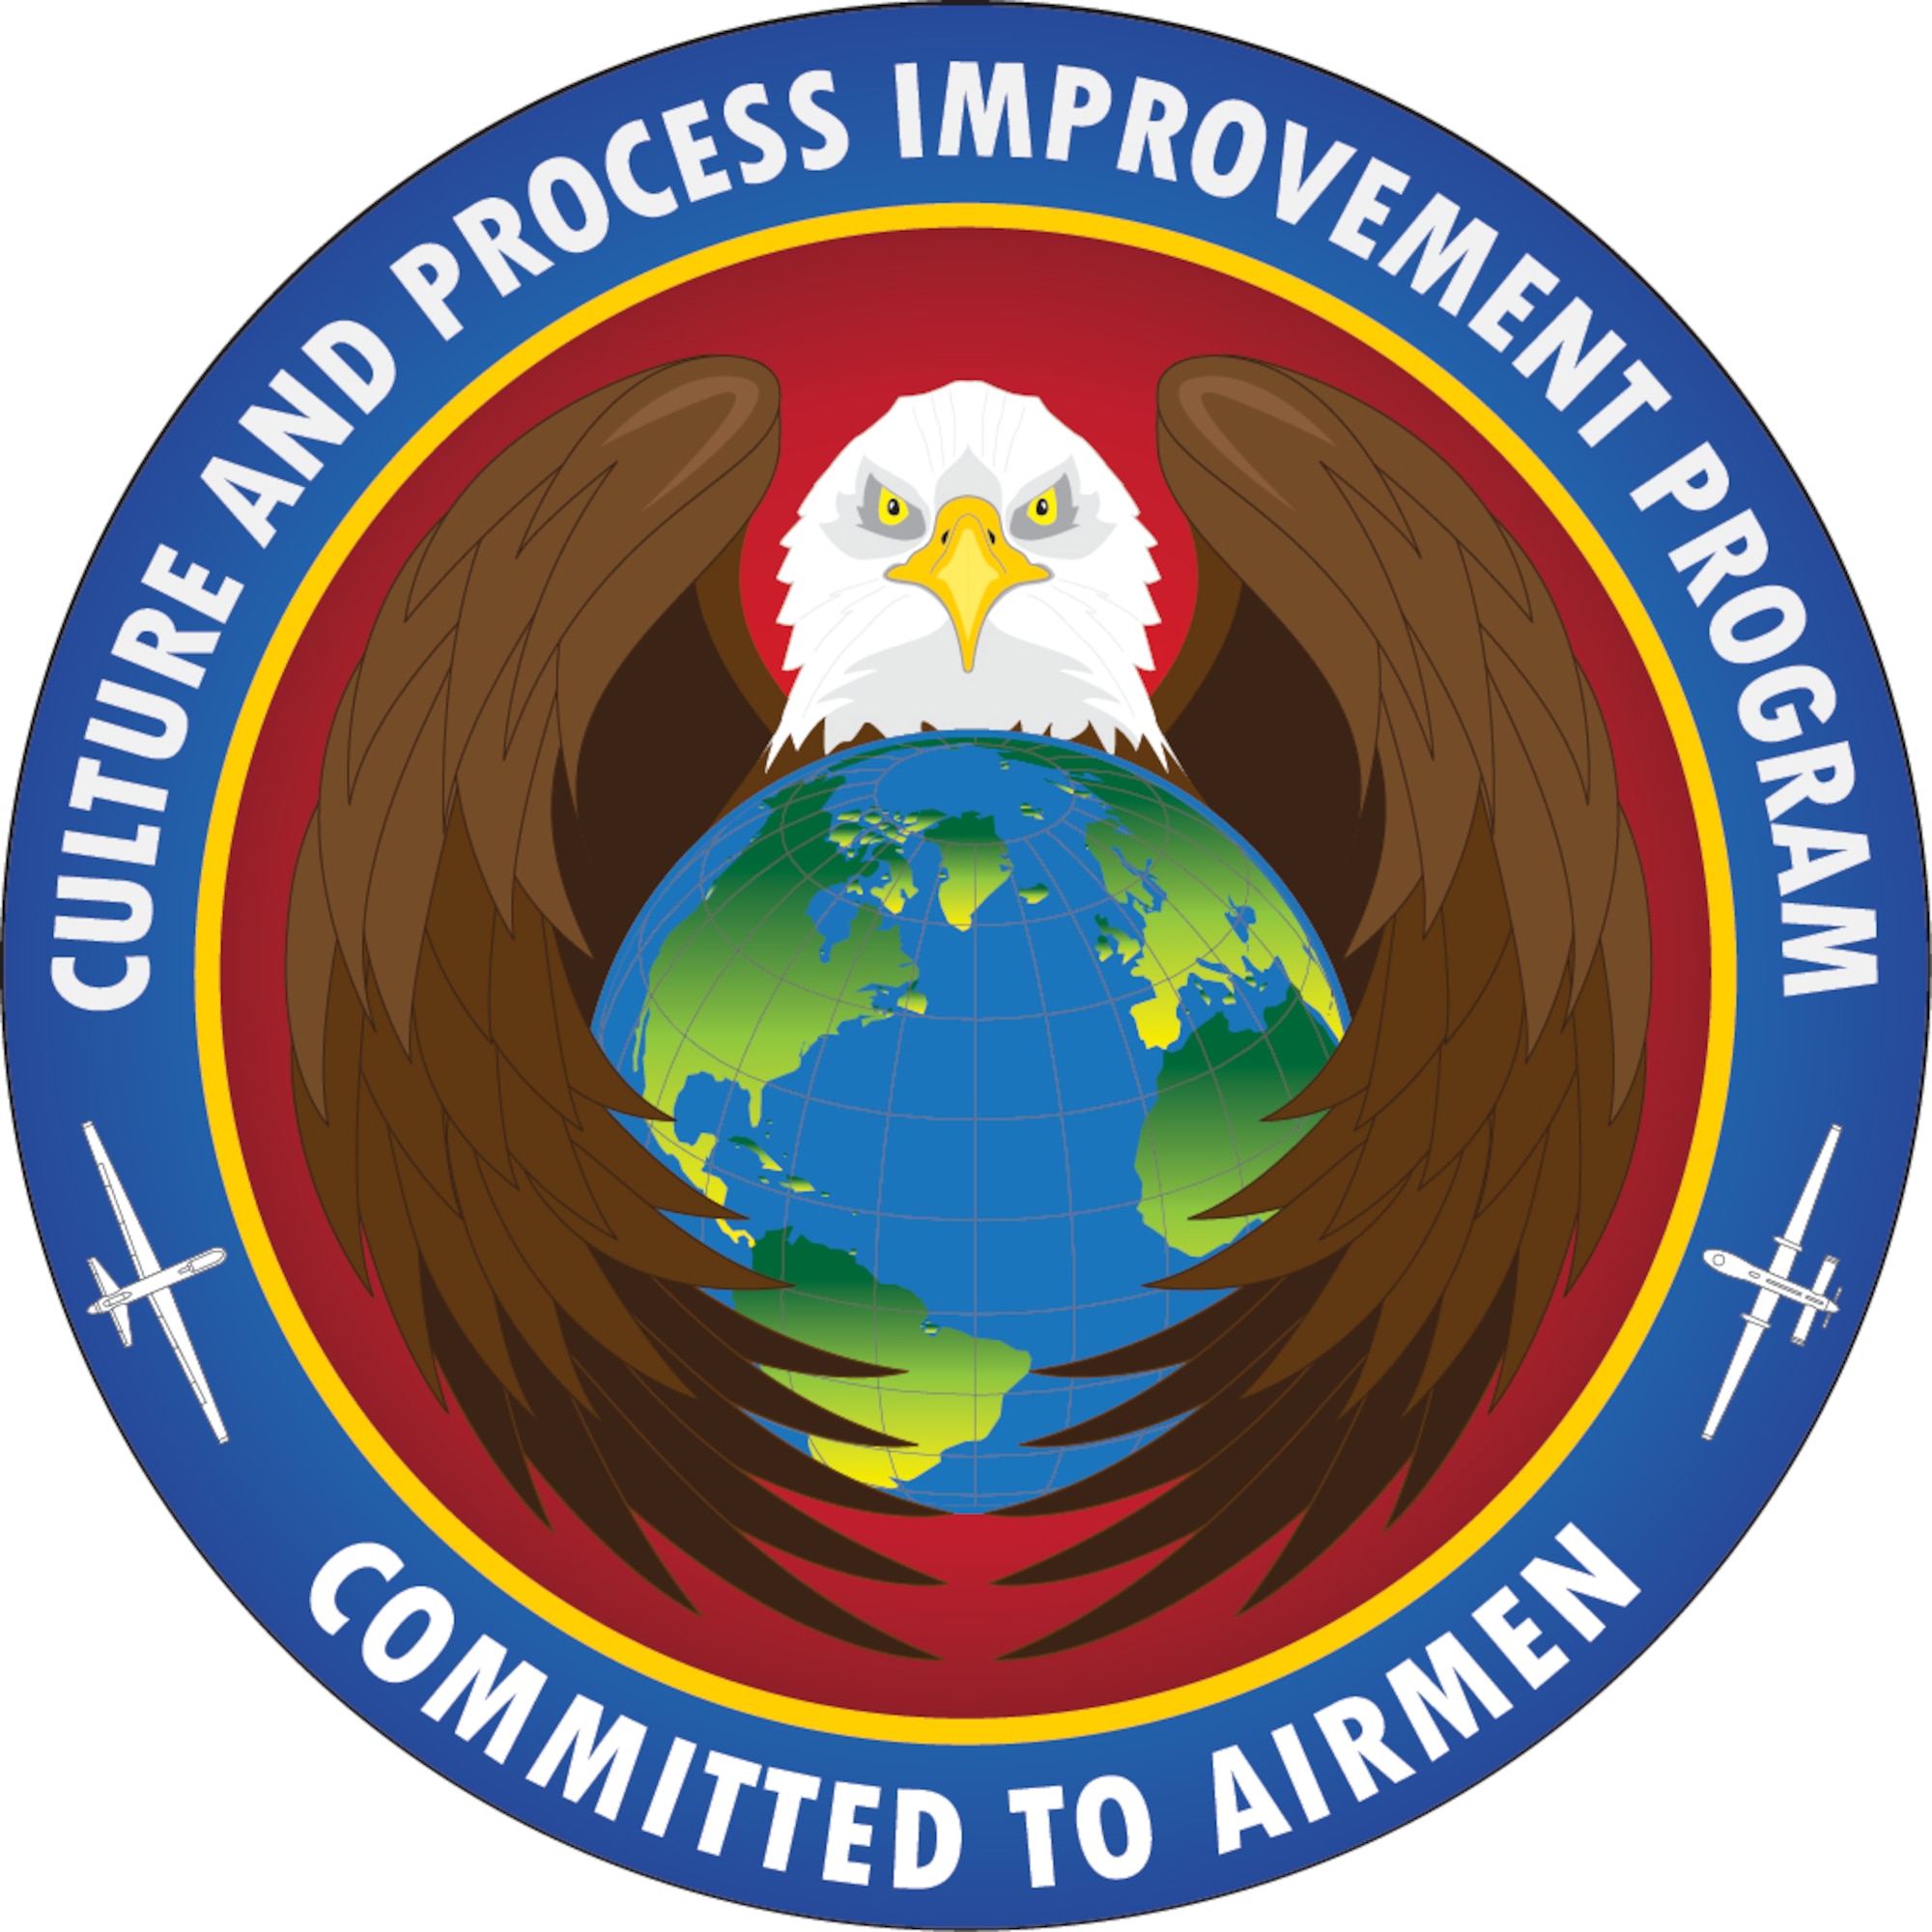 Air Combat Command's new program Culture and Process Improvement Program.